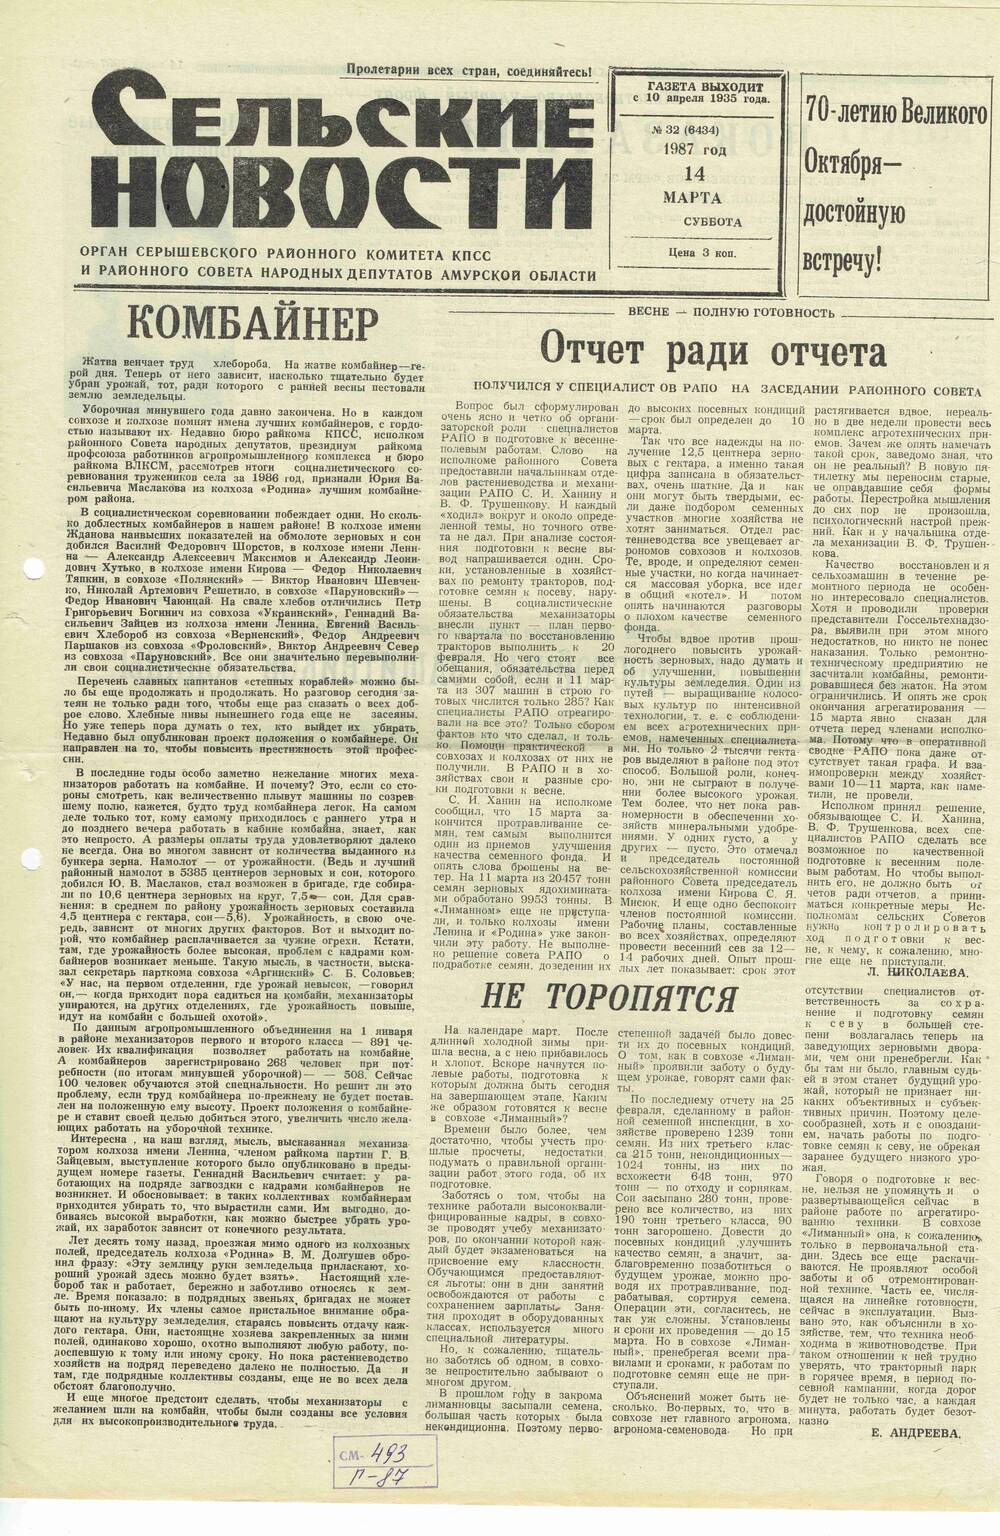 Газета «Сельские новости» №32 14.03.1987 года выпуска.